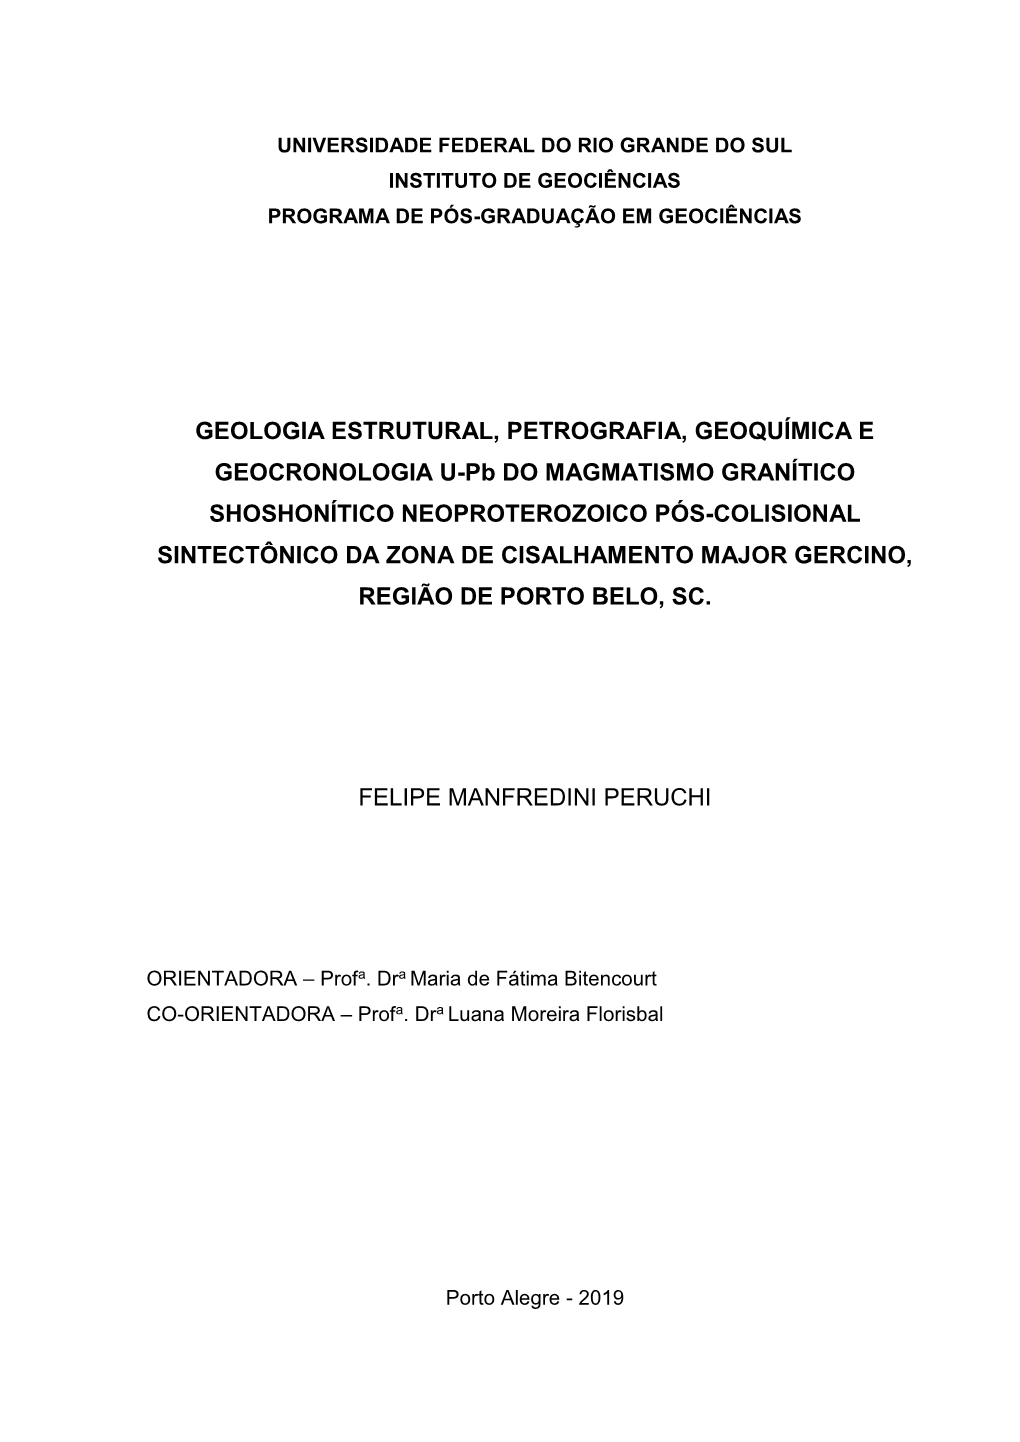 Geologia Estrutural, Petrografia, Geoquímica E